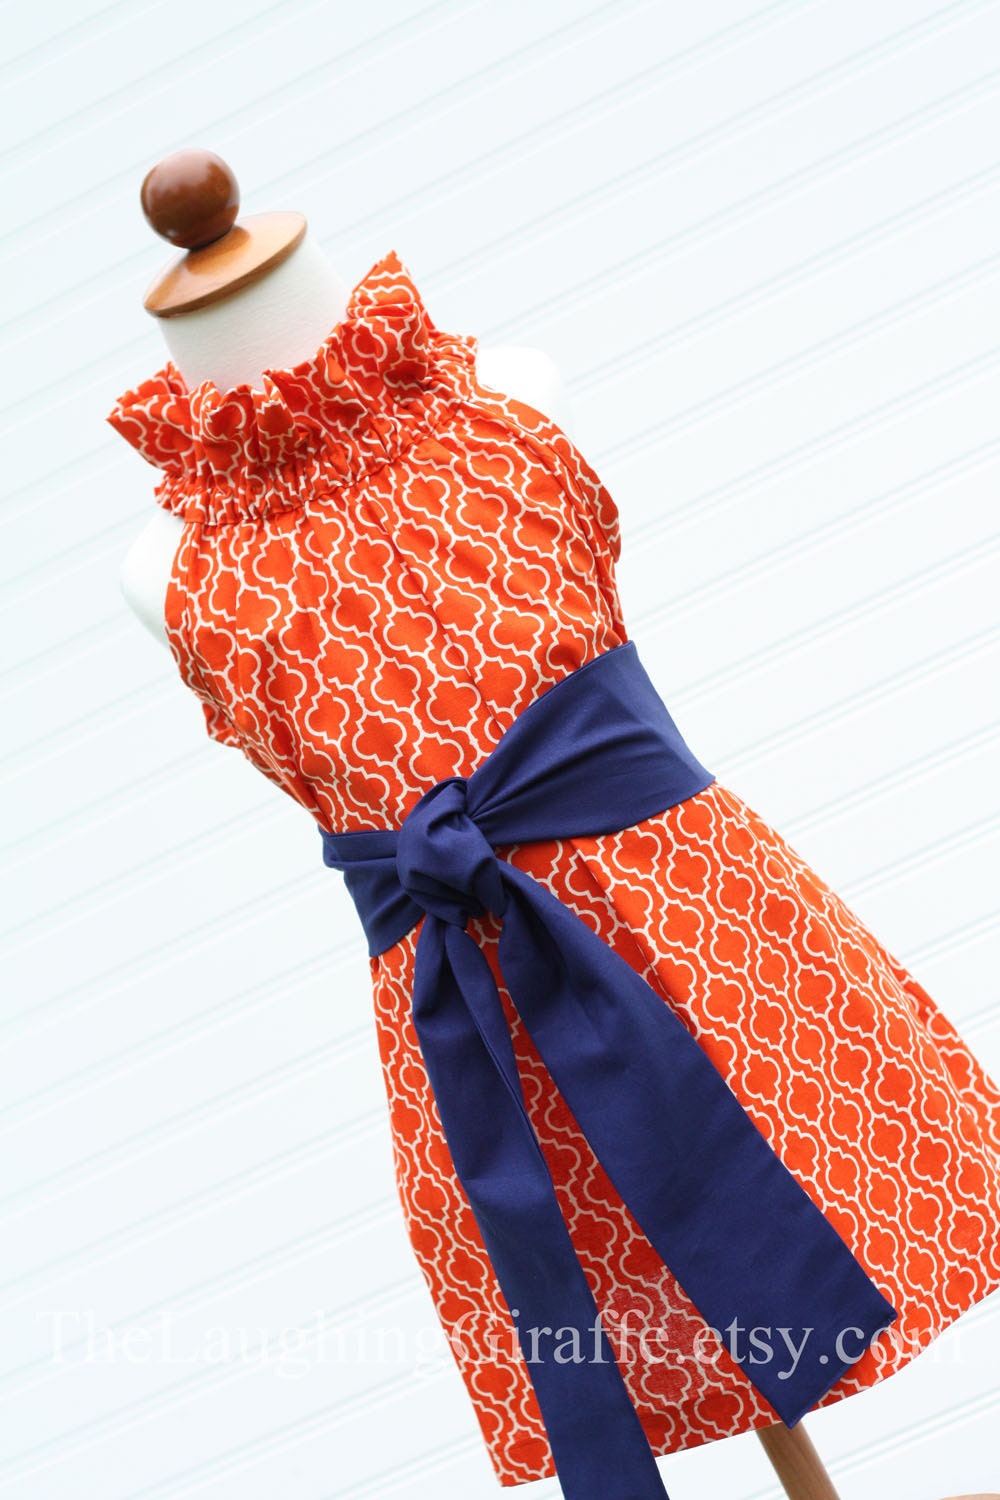 Custom Listing for mrsjvining...NEW - Tangerine Delight...Women's Ruffler Dress with Removable Sash...Size Small, Medium, Large